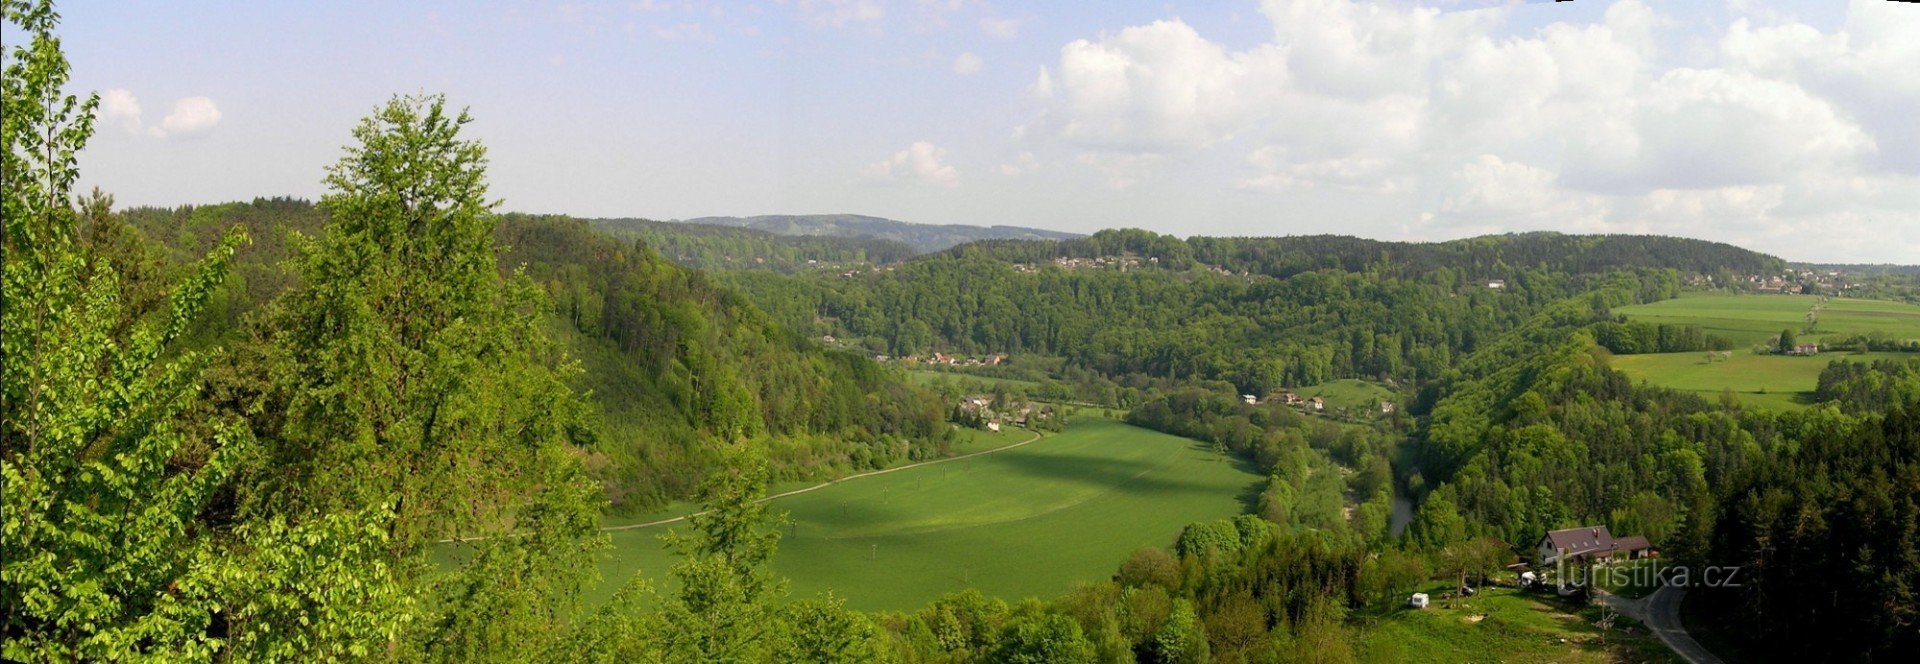 Κοιλάδα Jizera από το Zdenčina skály